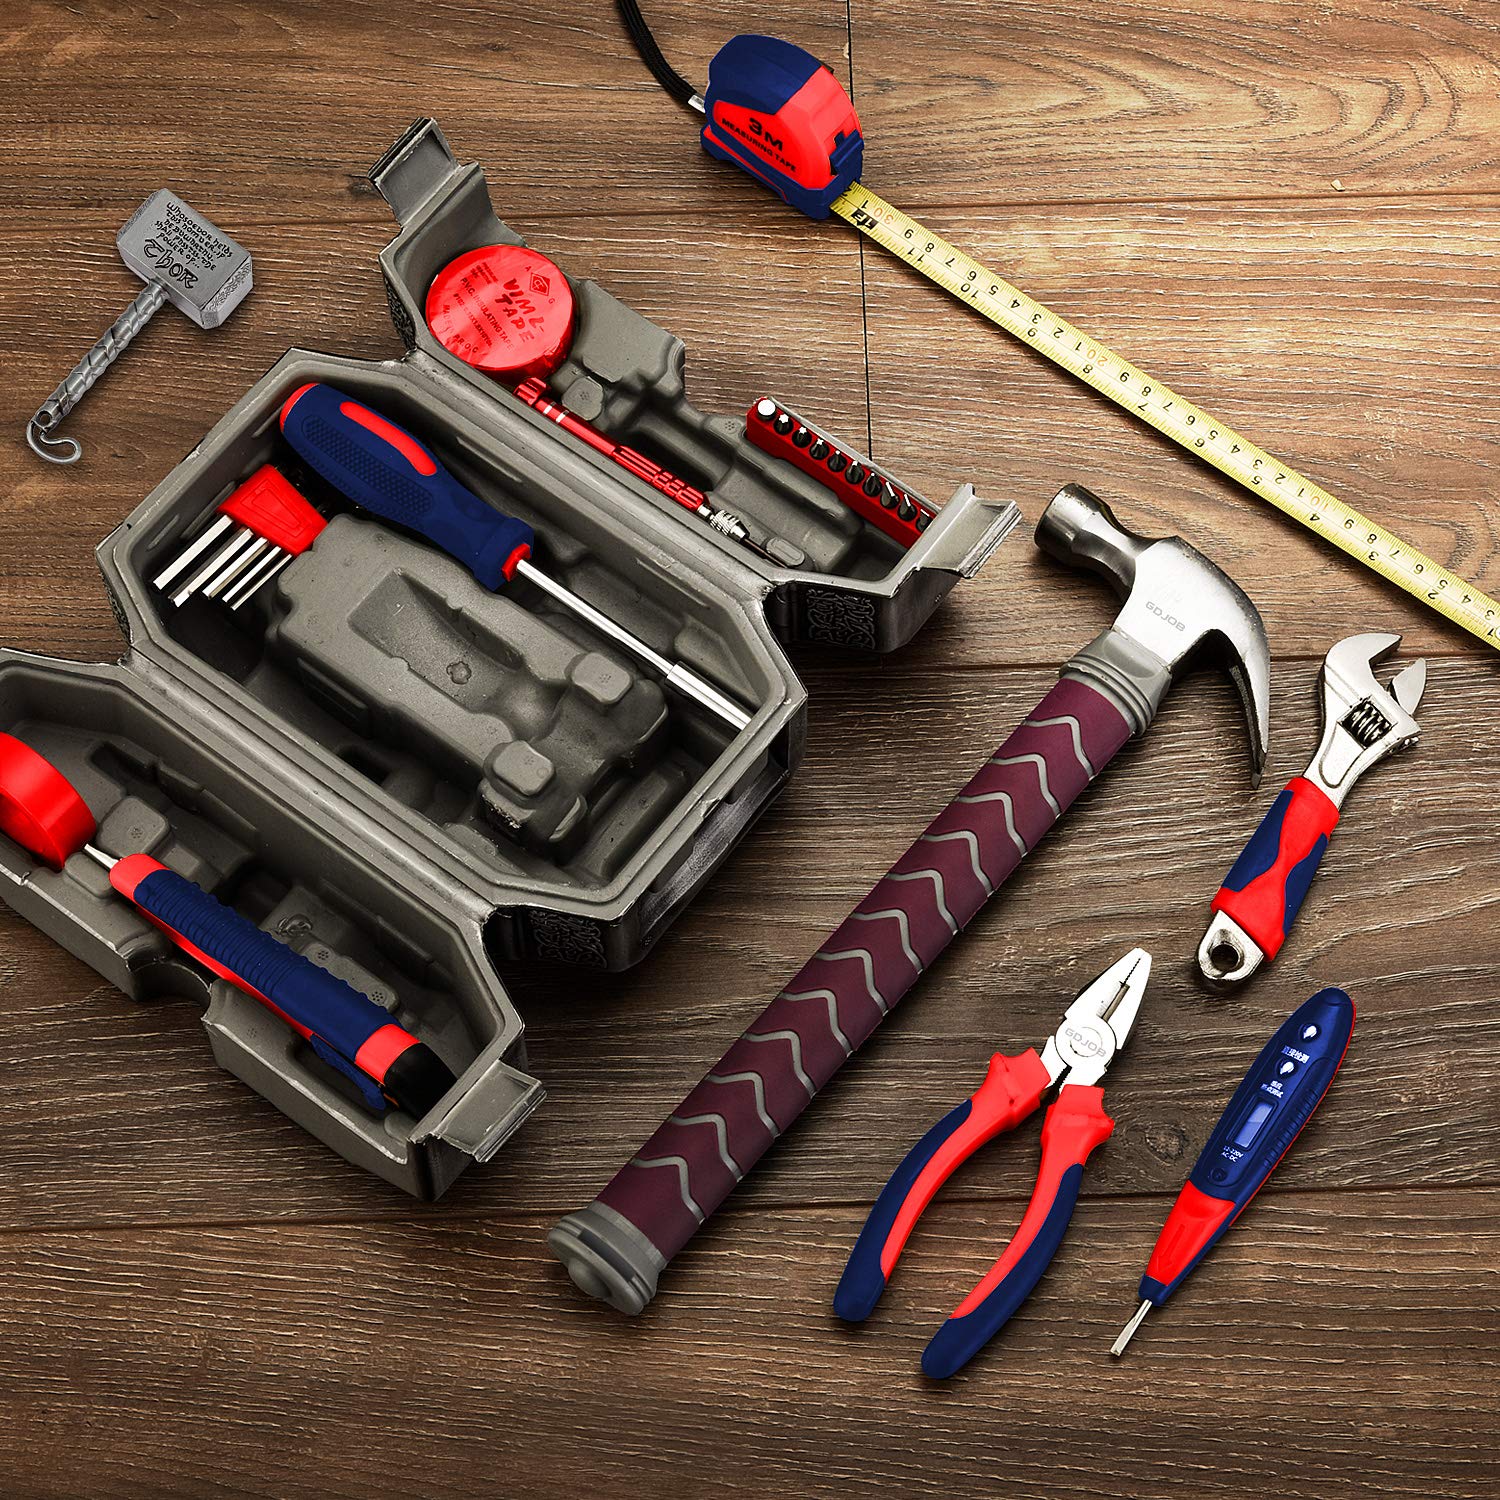 Thor Hammer Tool Kit Juego de herramientas múltiples de 29 piezas para sus reparaciones diarias